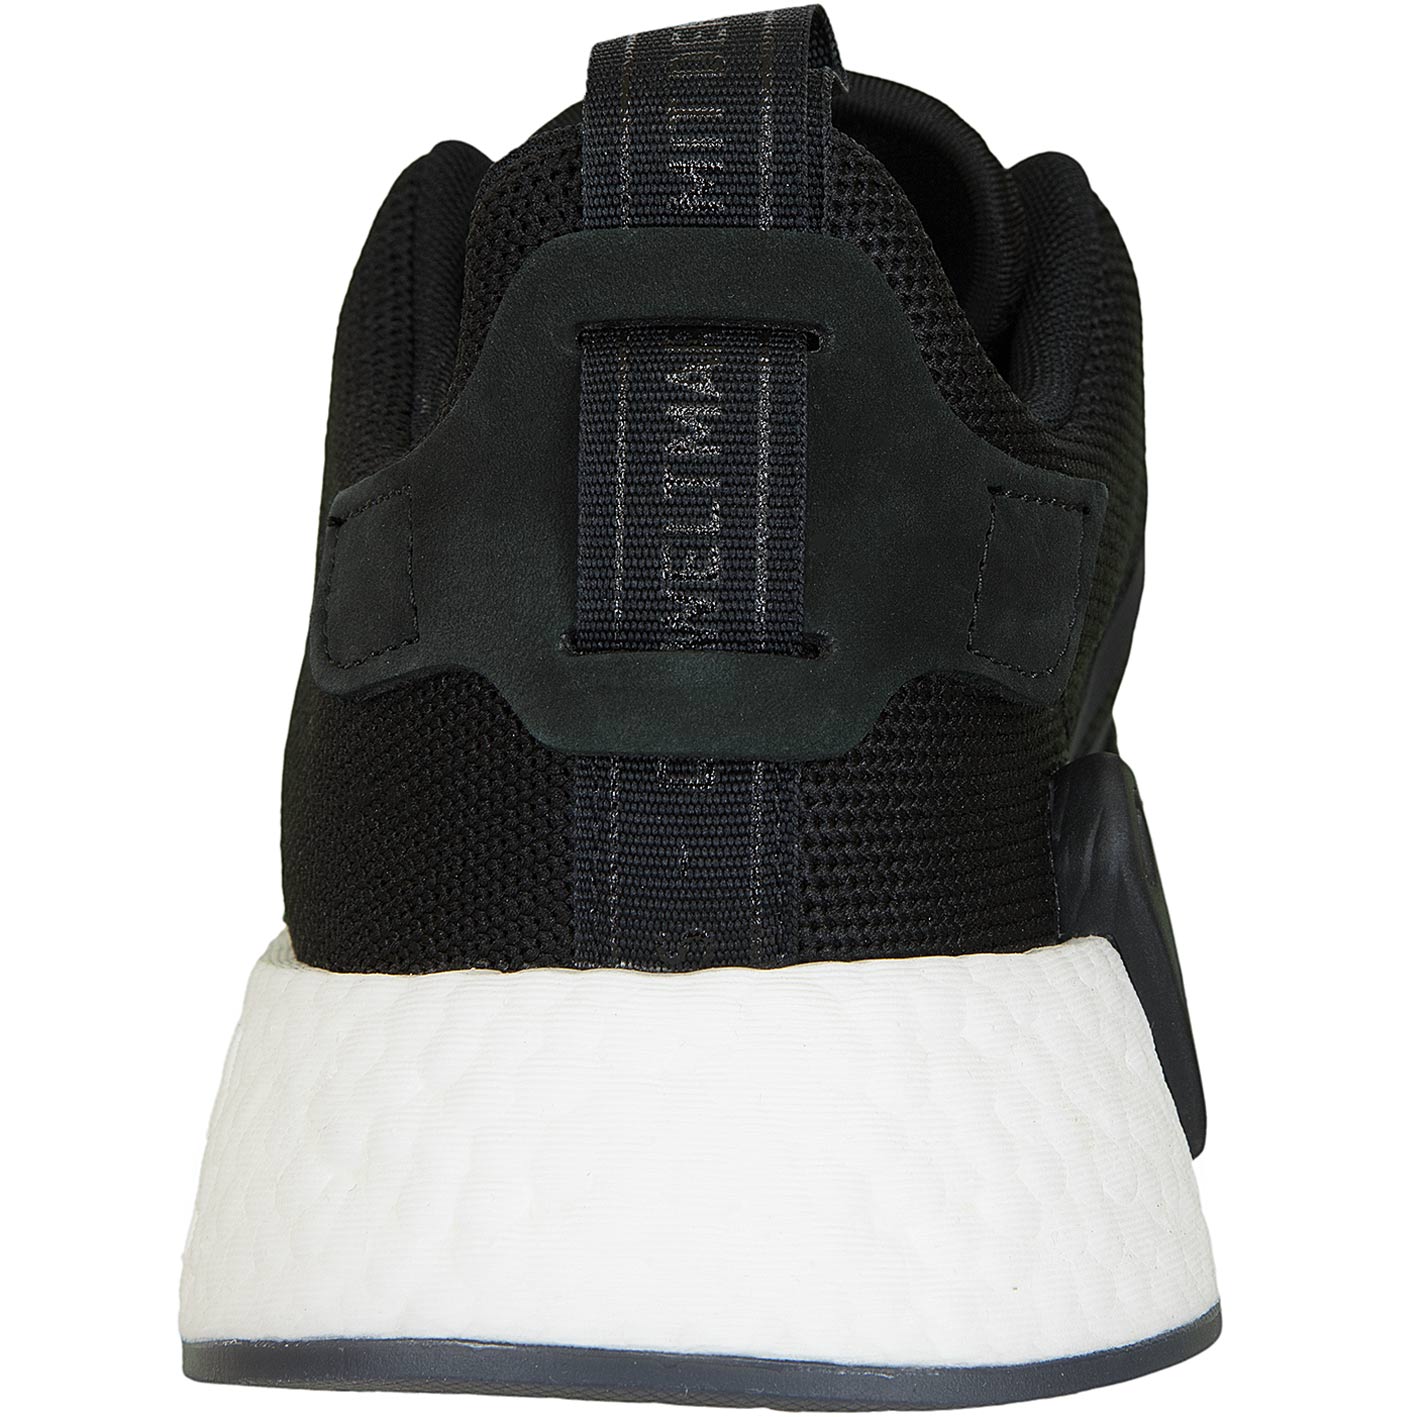 ☆ Sneaker Adidas NMD R2 schwarz/schwarz - hier bestellen!